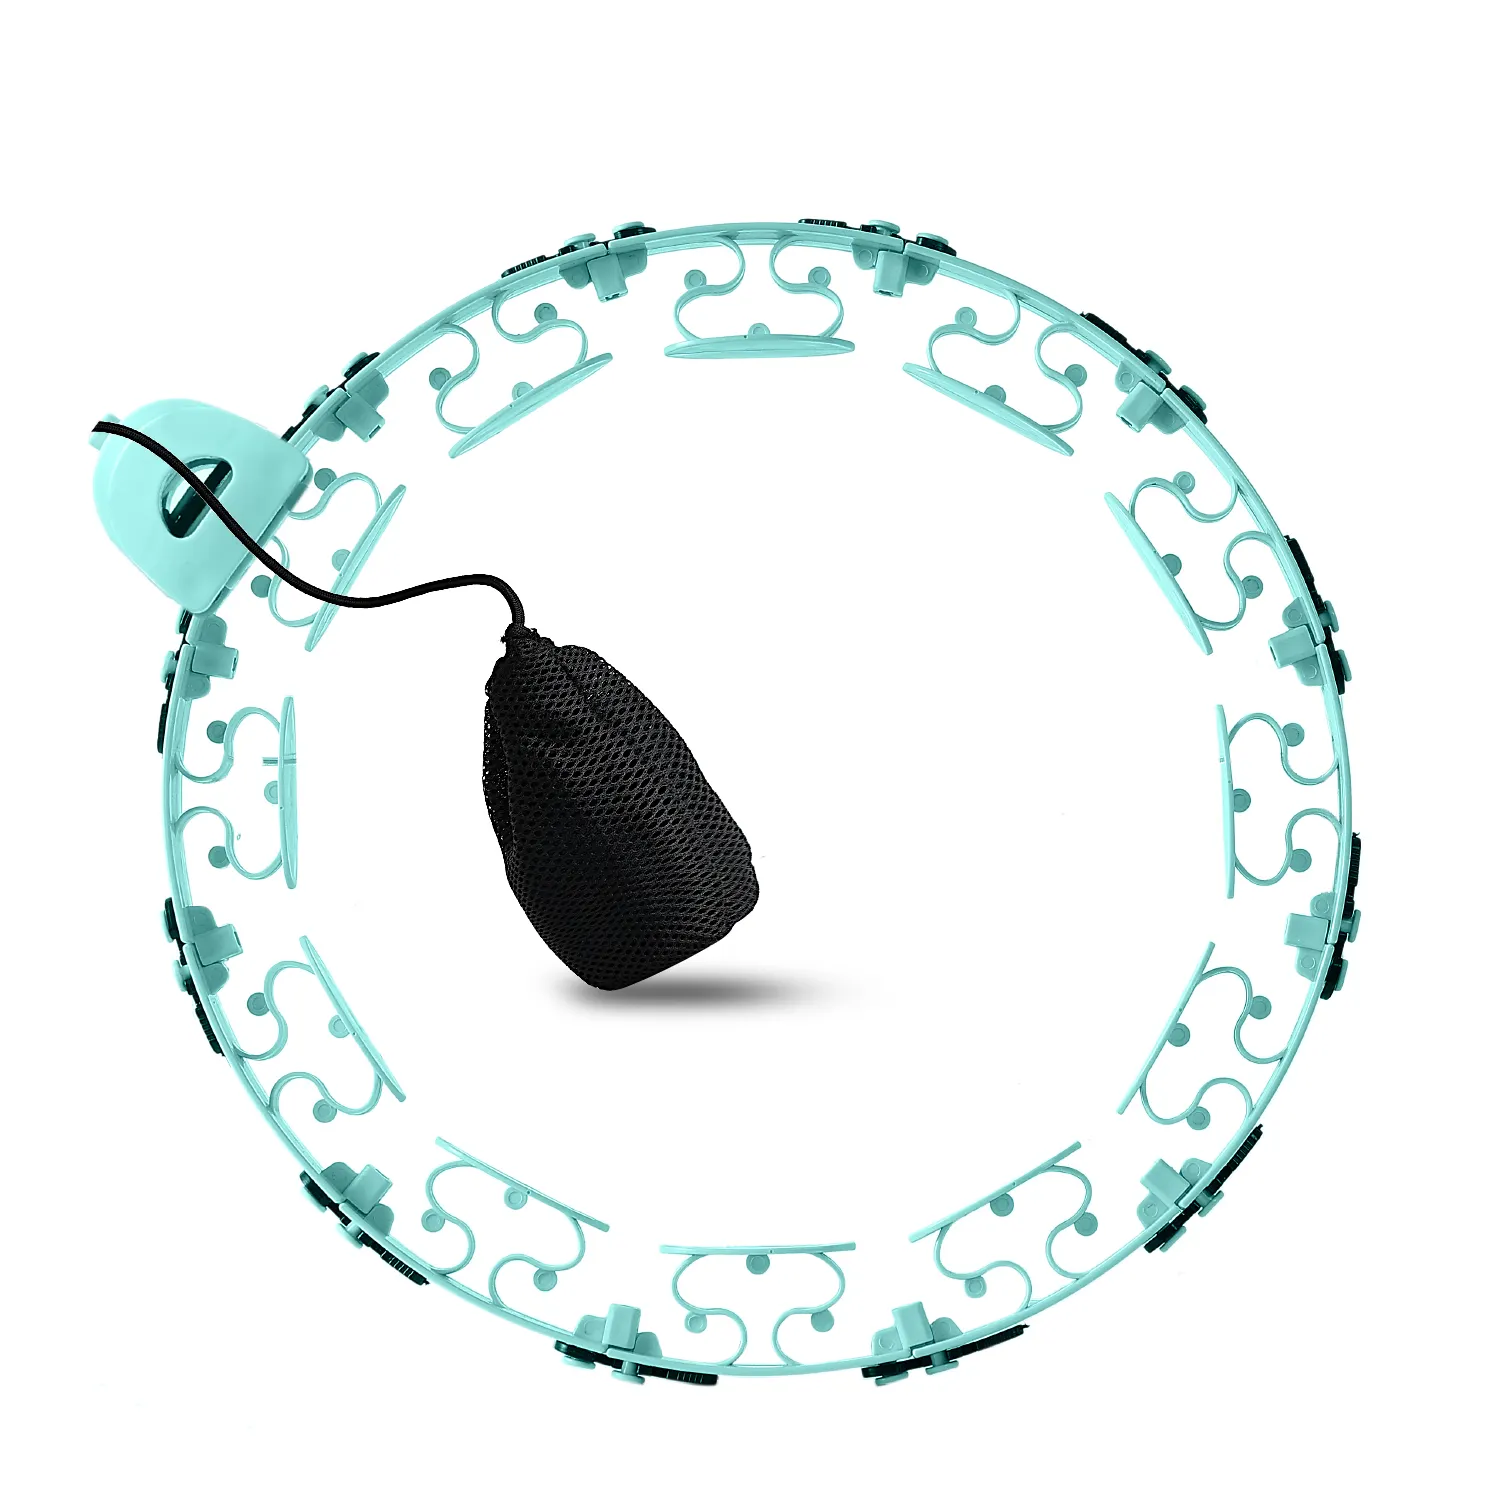 Ağırlıklı akıllı hula yüzük çemberler üreticisi masaj fıstık topu çantası-edebilirsiniz yük sağ ağırlık içinde